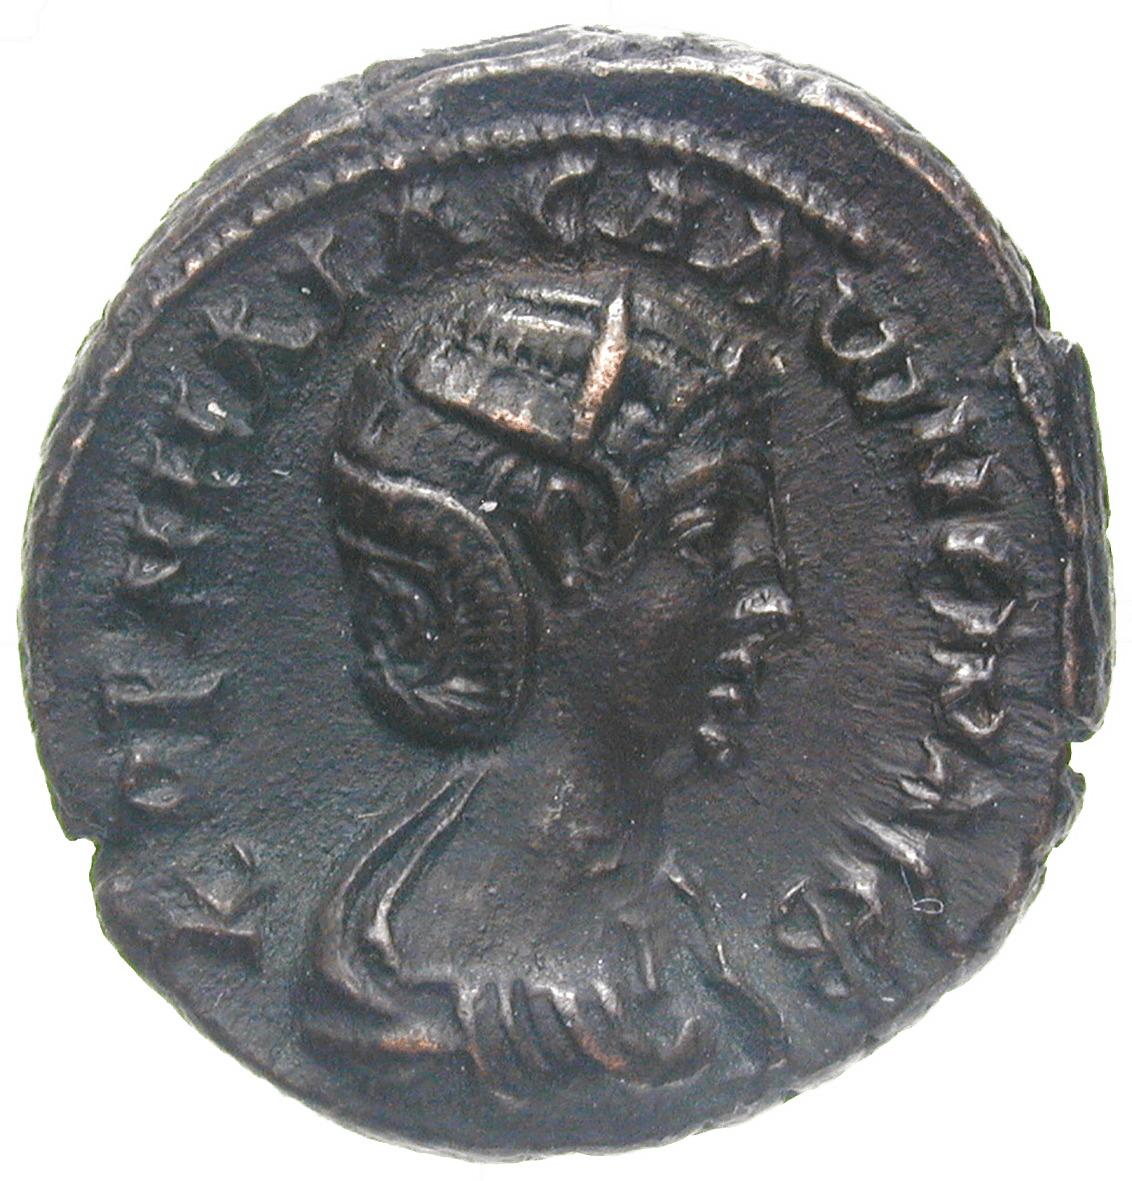 Römische Kaiserzeit, Gallienus für seine Gemahlin Salonina, Tetradrachme (obverse)